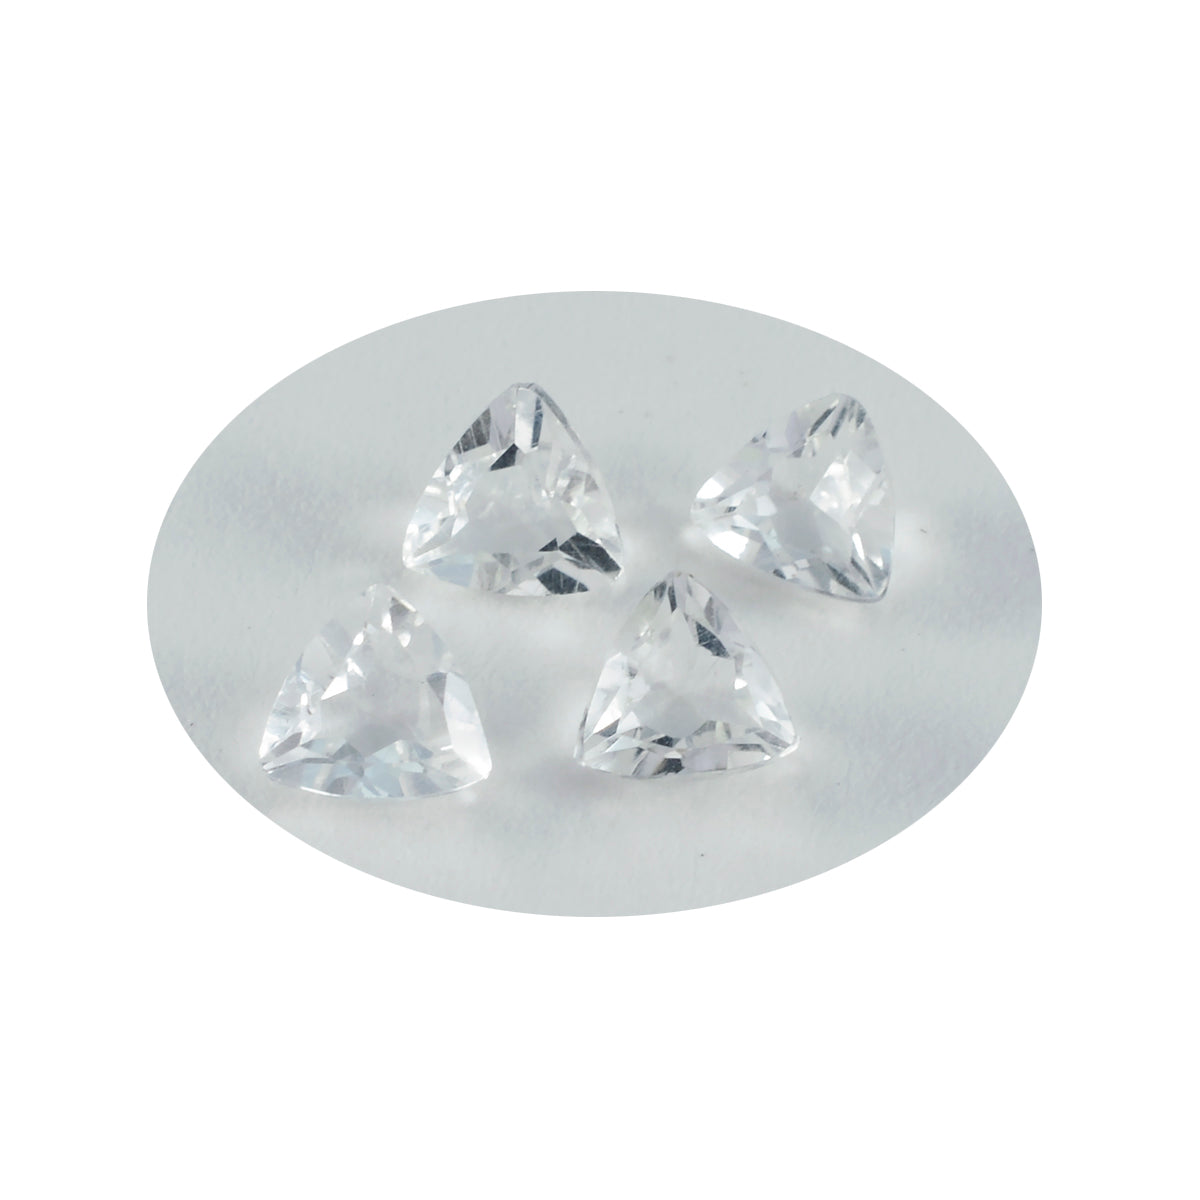 Riyogems 1 pièce de quartz en cristal blanc à facettes 11x11mm en forme de trillion, pierre précieuse en vrac de qualité mignonne